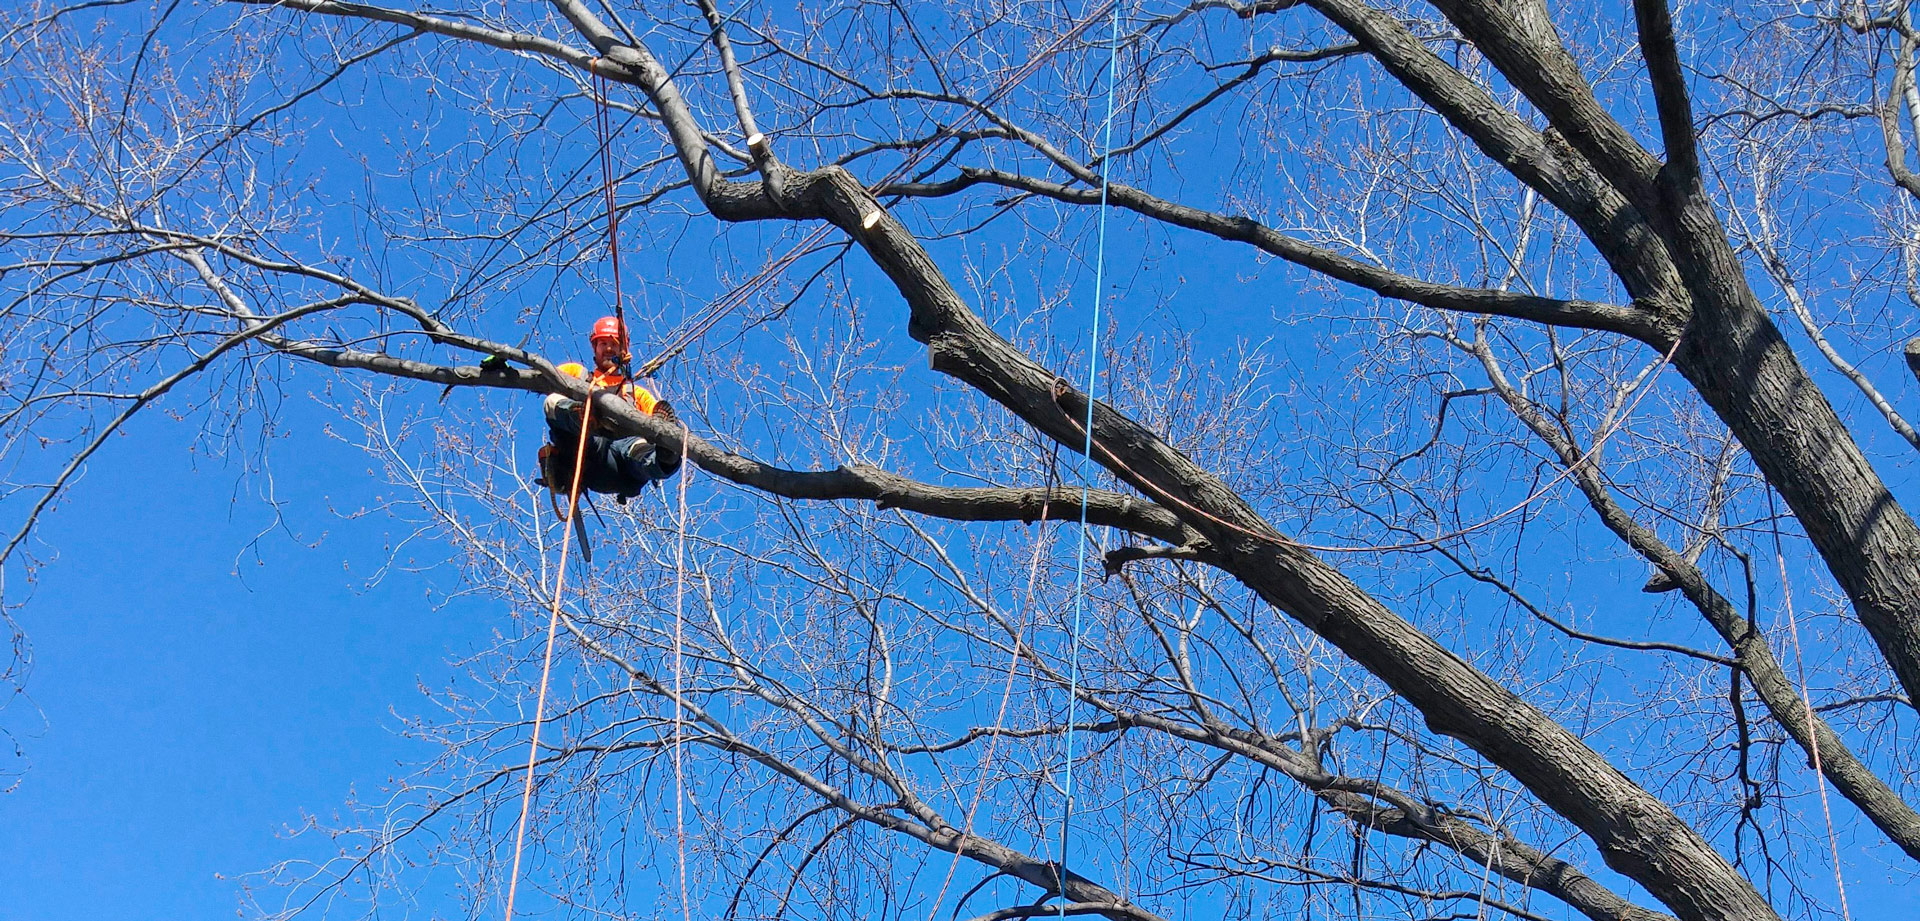 Élagage et émondage d'arbres et branches à Mercier-Hochelaga-Maisonneuve